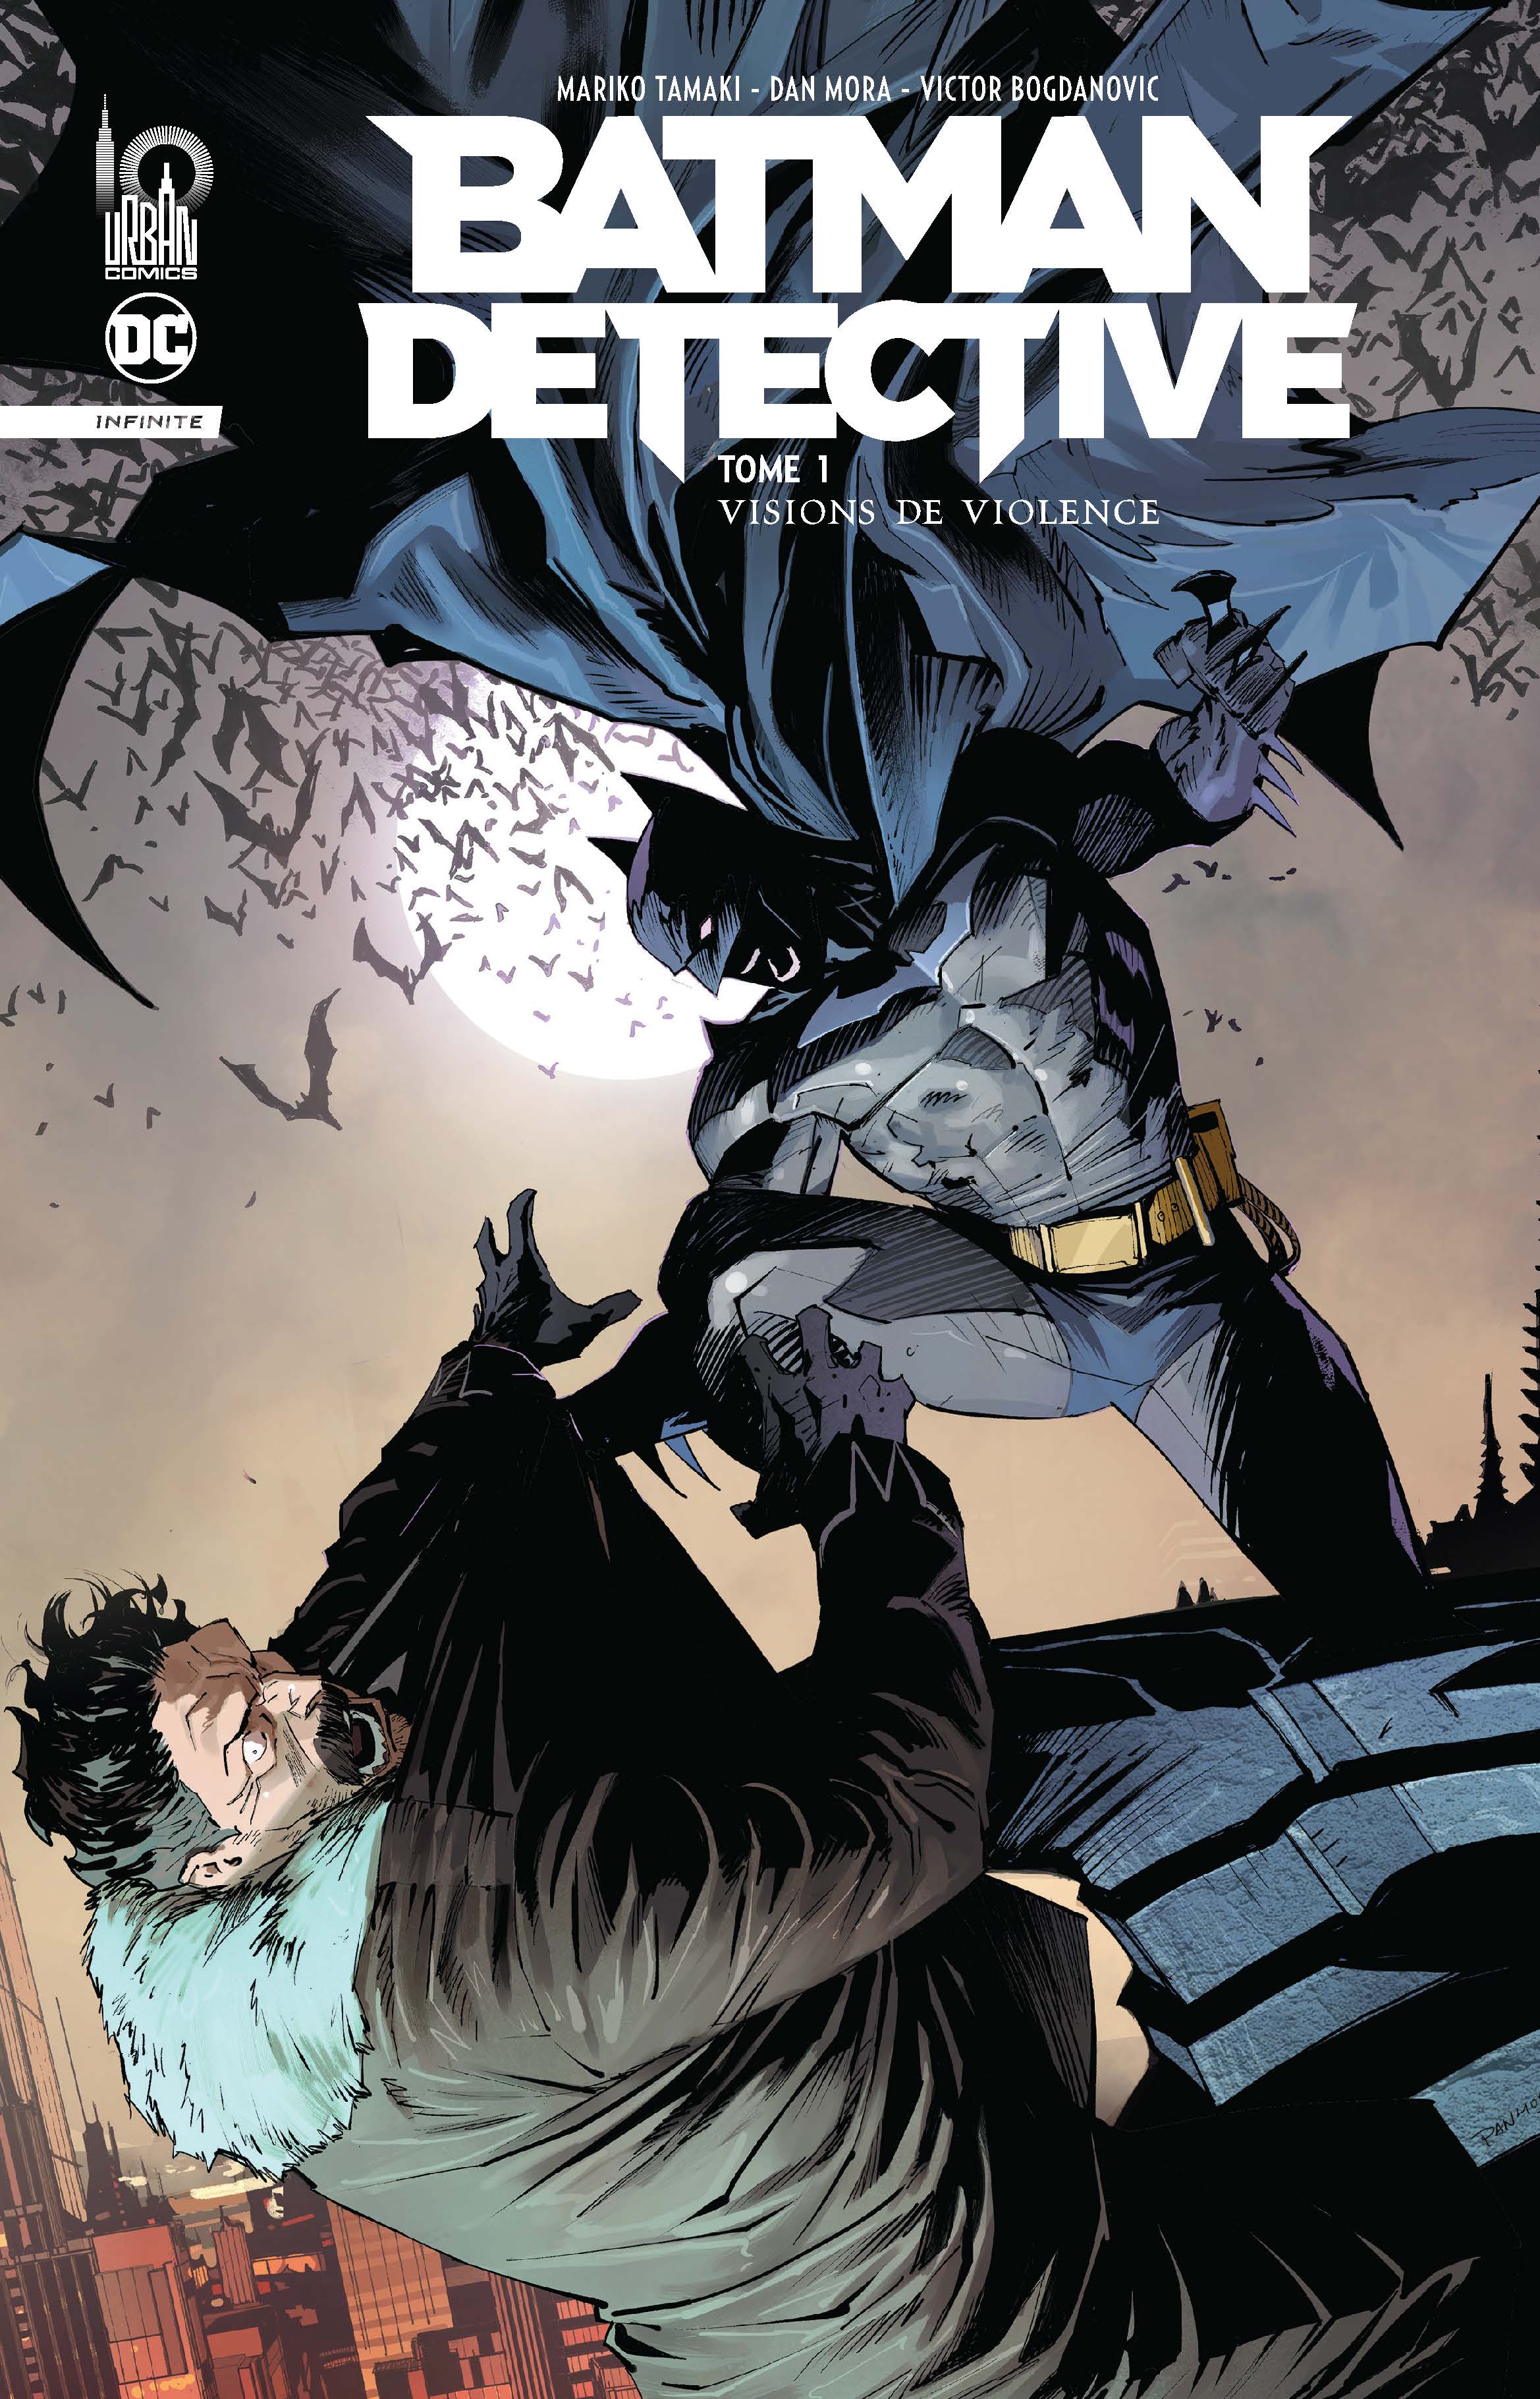 Batman Detective Infinite – Tome 1 - couv